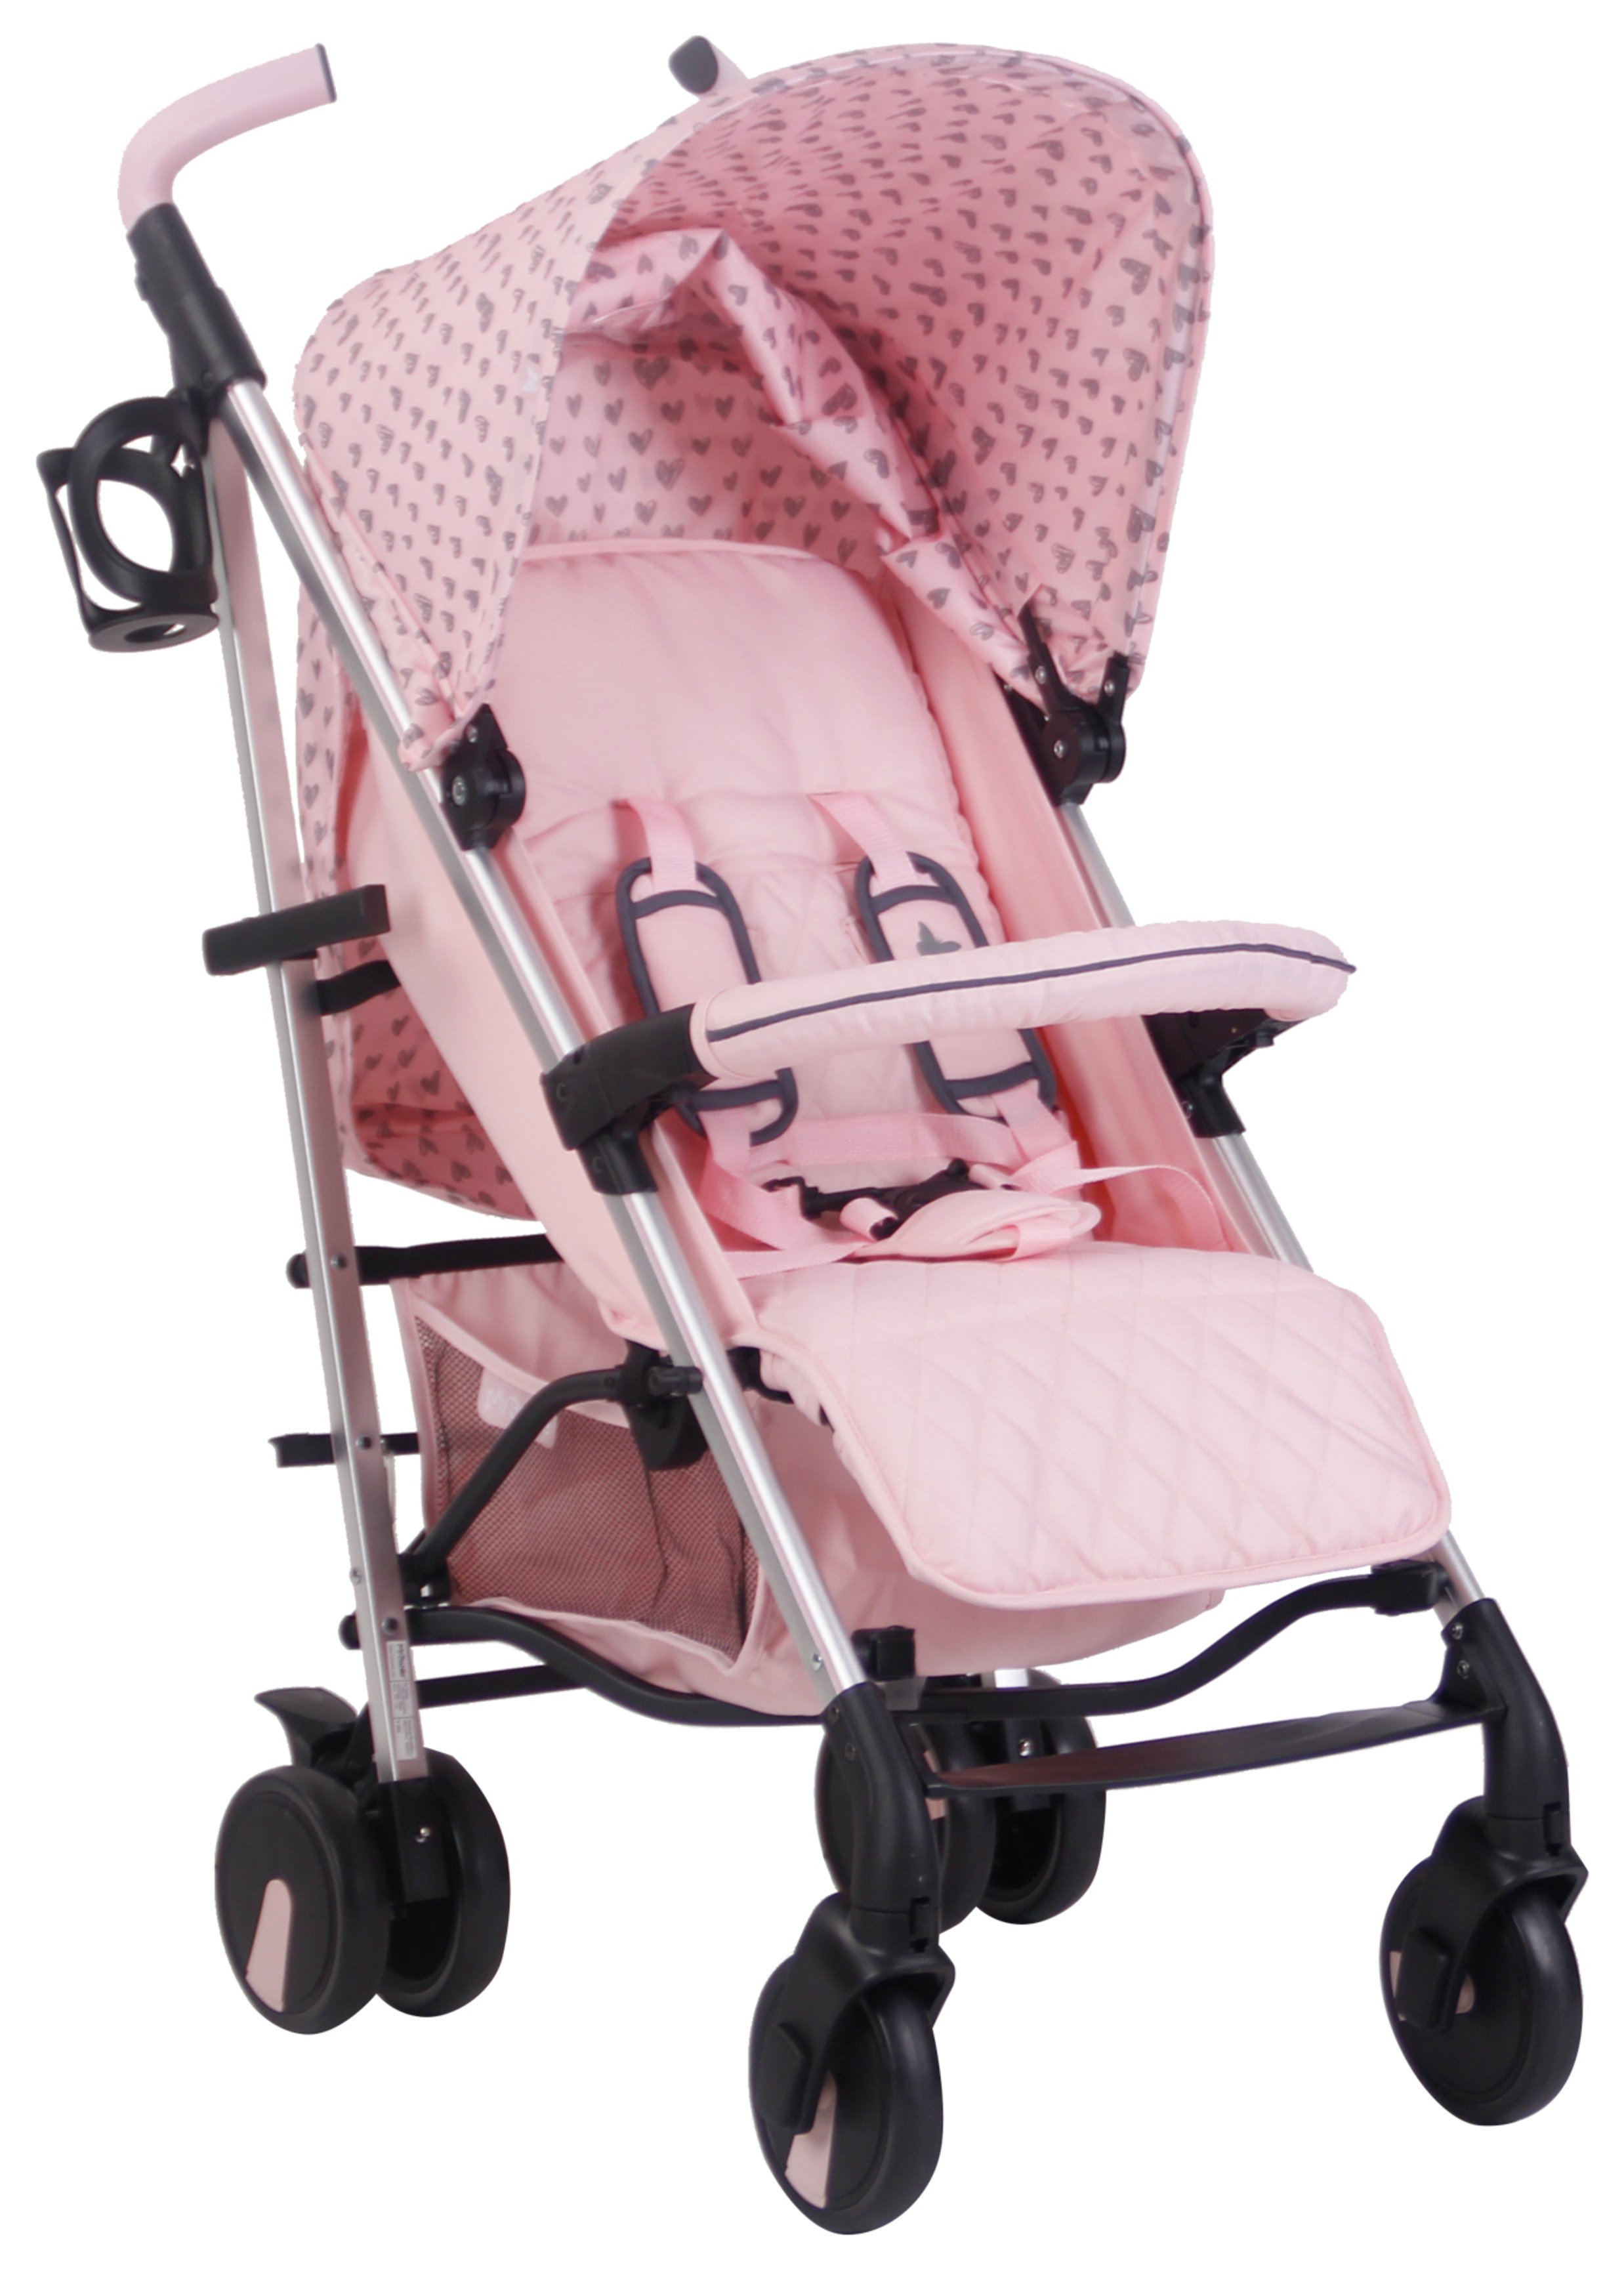 My Babiie MB51 Katie Piper Stroller - Pink Hearts (7544545) | Argos